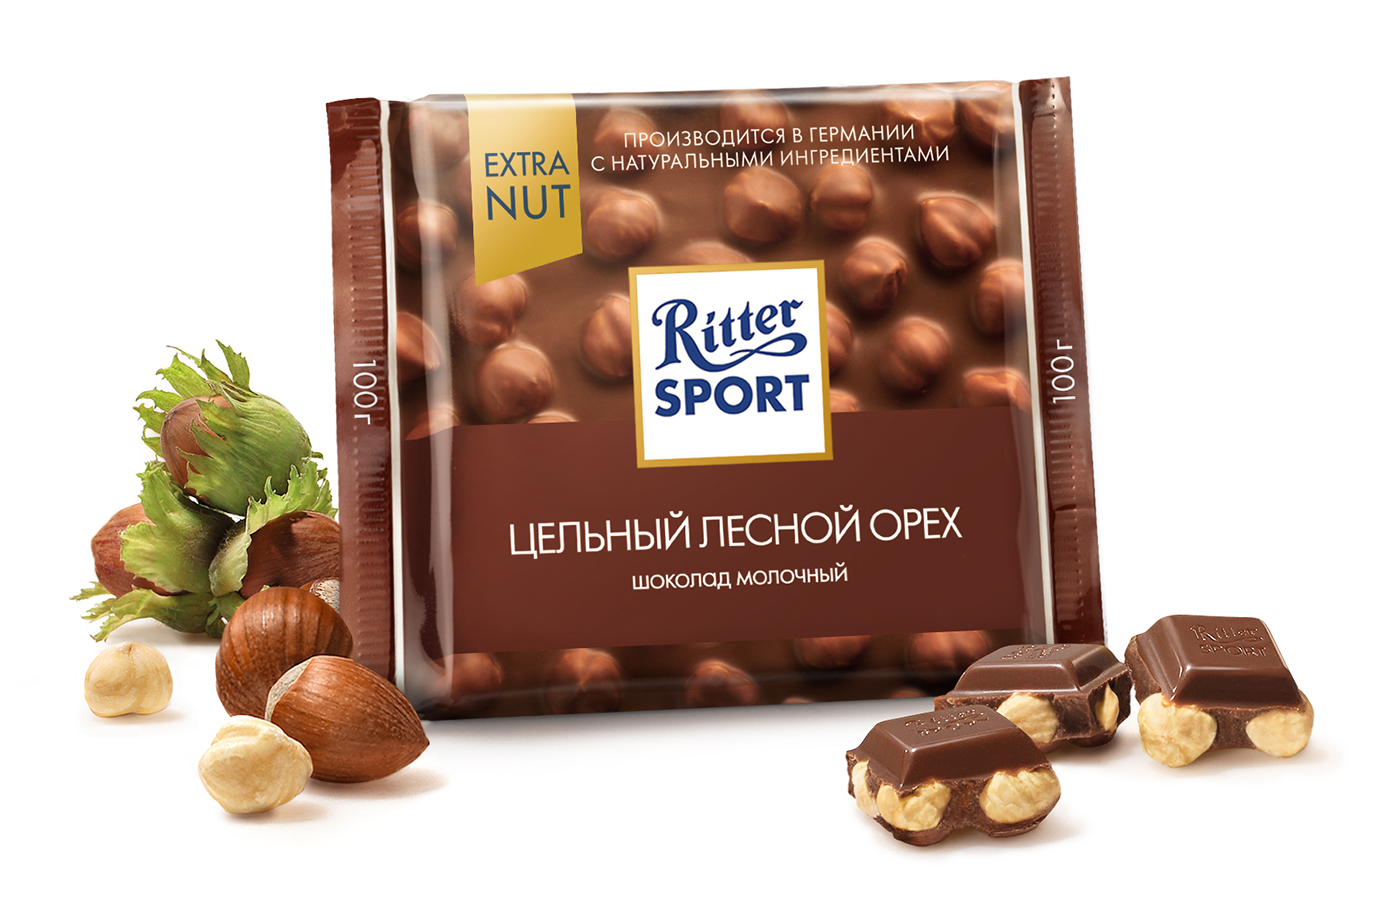 Фото Ritter Sport/Риттер спорт "Шоколад молочный" Цельный лесной орех в интернет-магазине axdv.ru / аиксдв